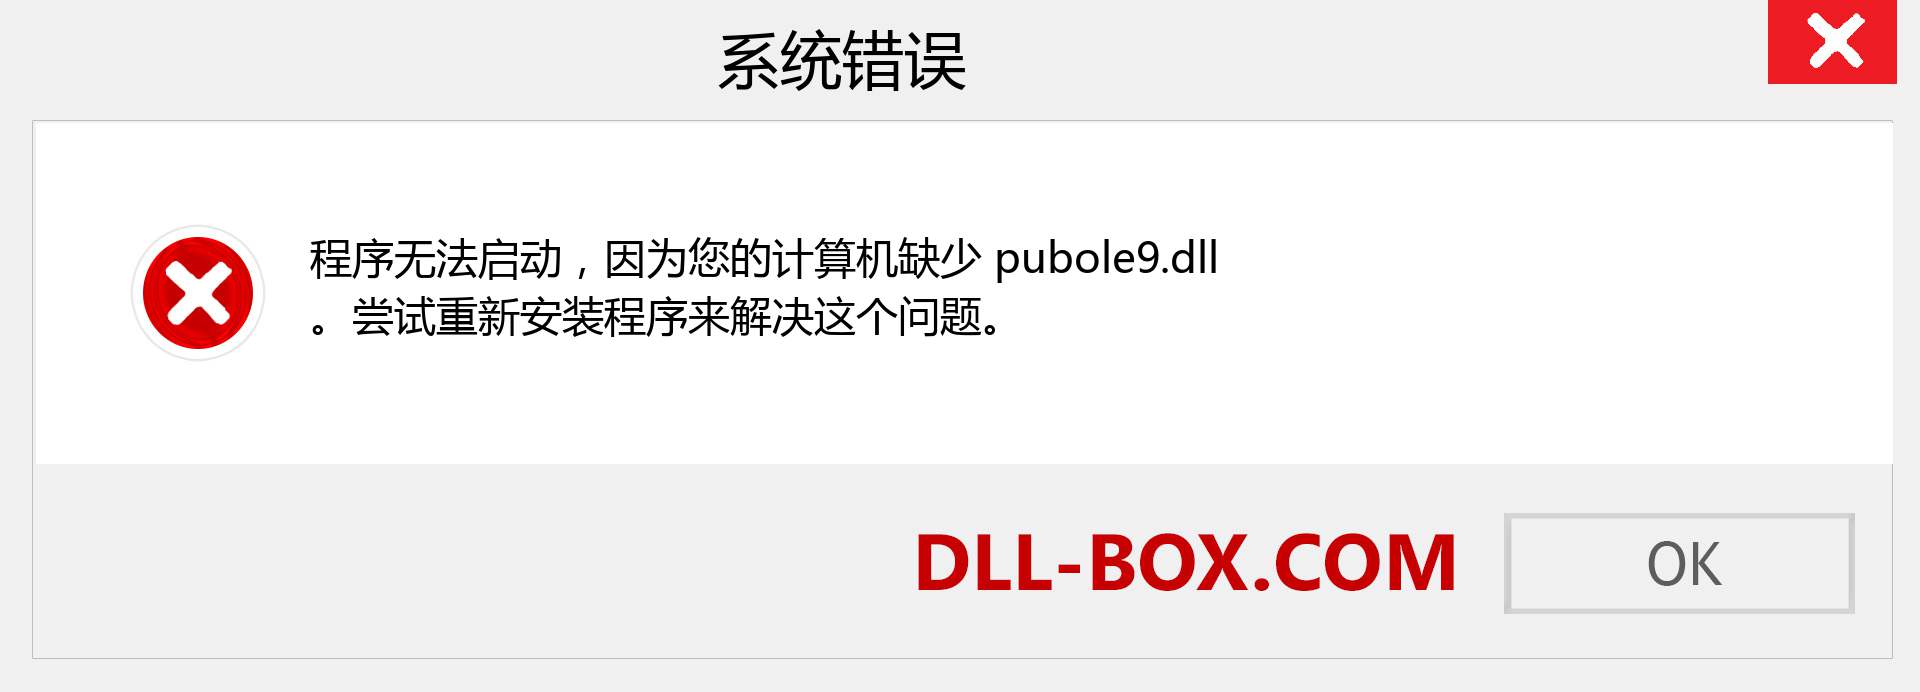 pubole9.dll 文件丢失？。 适用于 Windows 7、8、10 的下载 - 修复 Windows、照片、图像上的 pubole9 dll 丢失错误